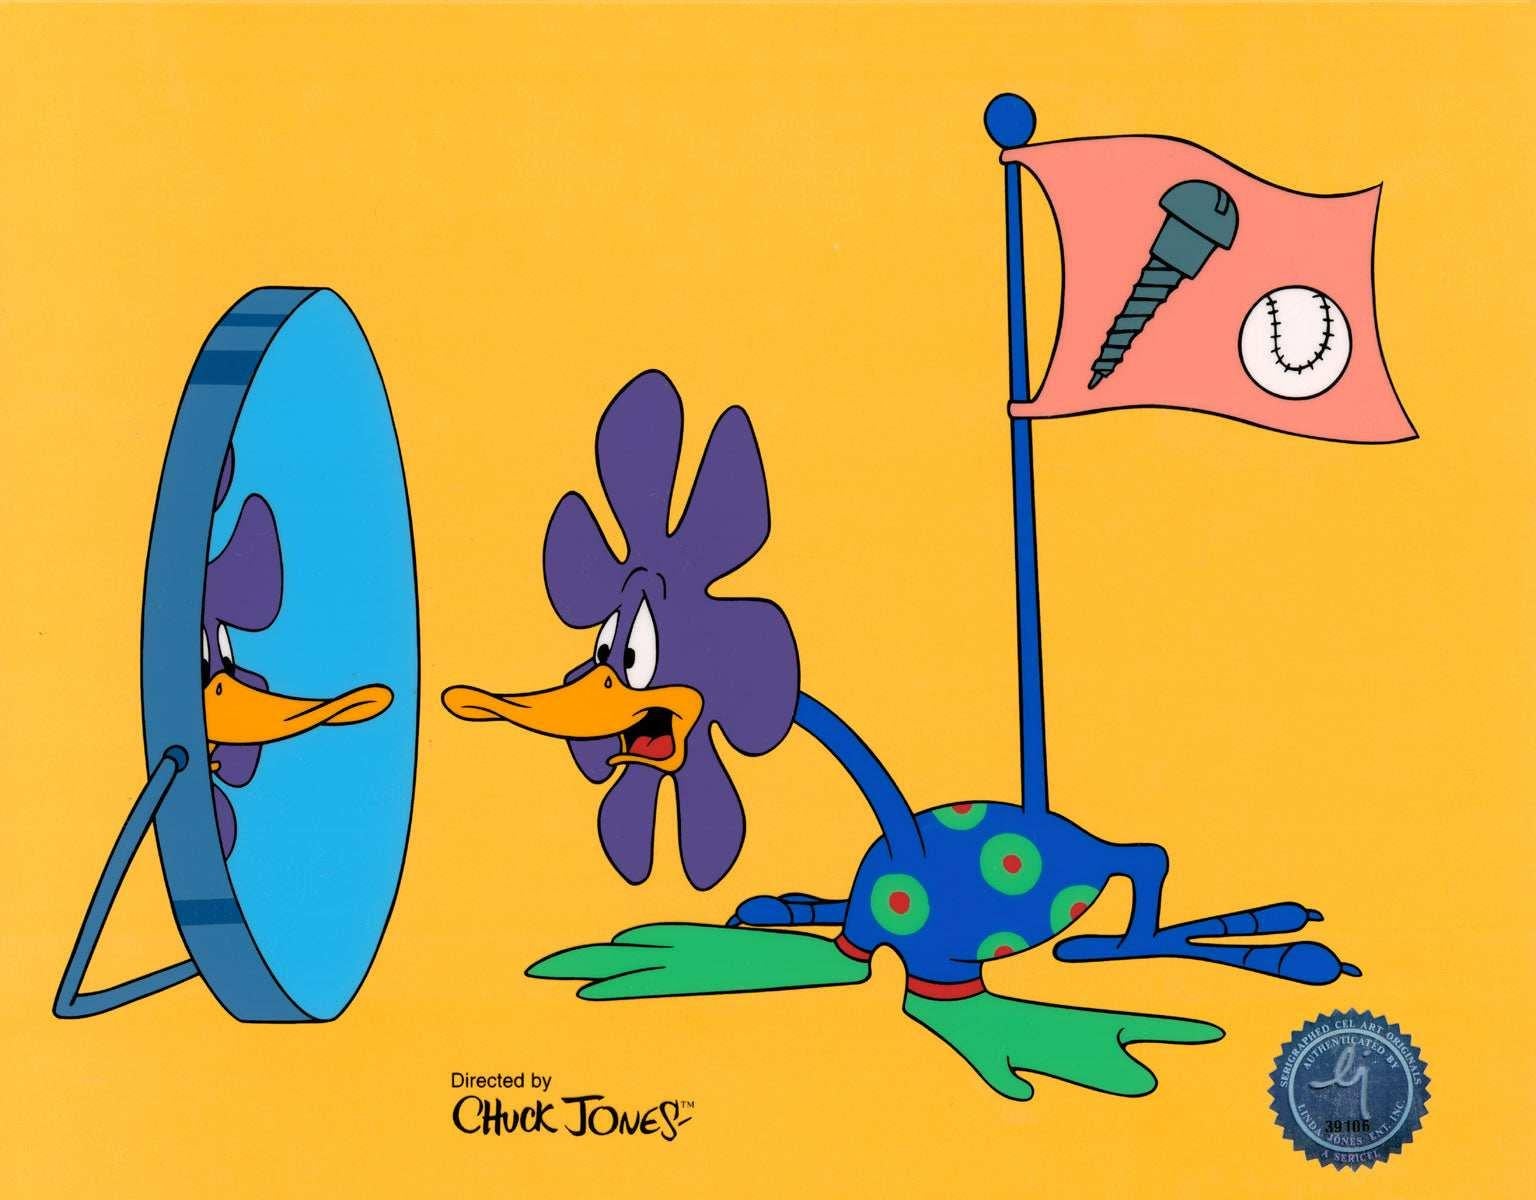 Daffy Screwball - Art by Chuck Jones